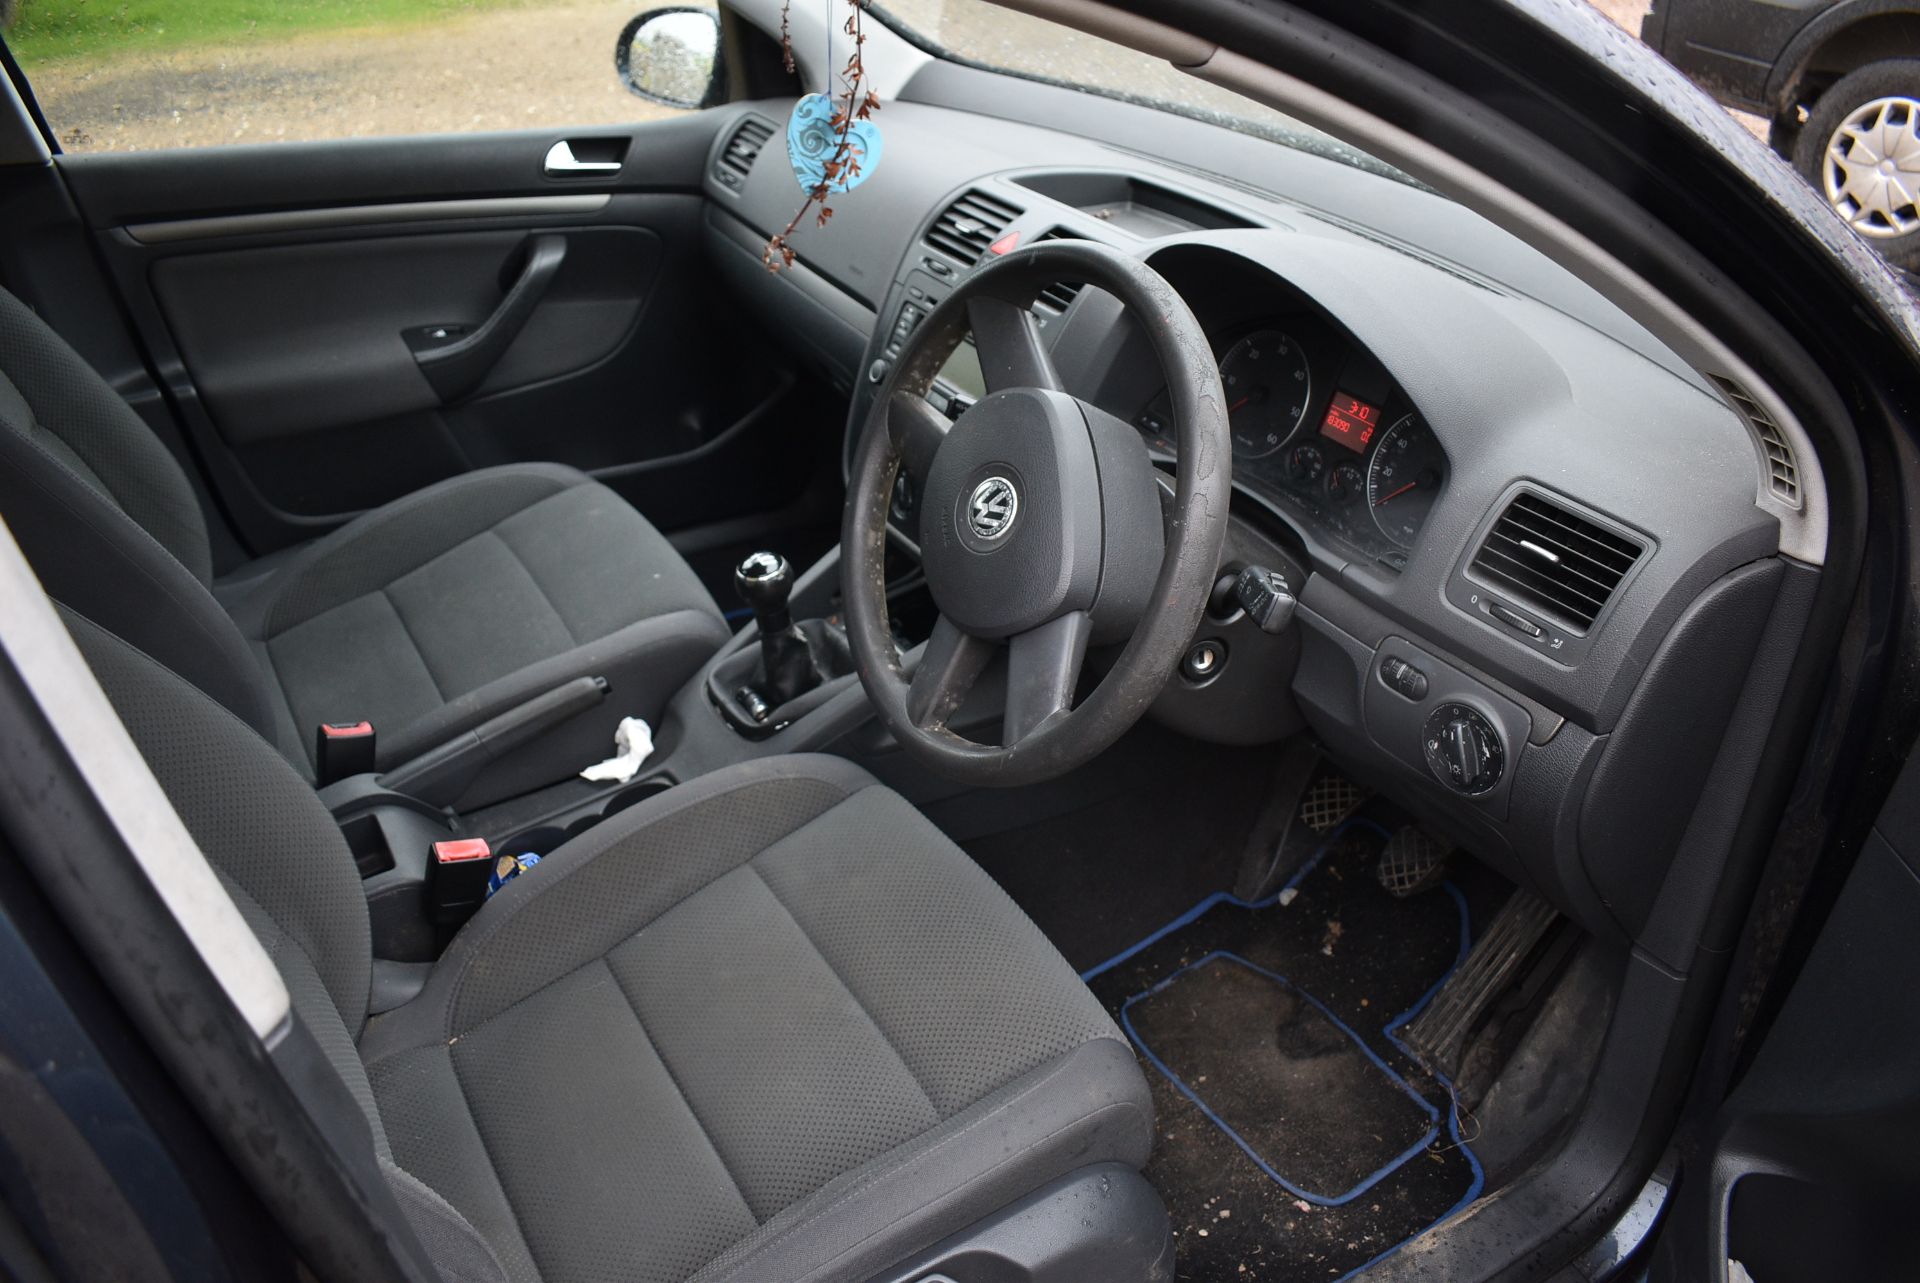 Volkswagen Golf TDI SE 5-Door Hatchback Reg: WR04 LCE, Mileage: 183090 - Bild 4 aus 13